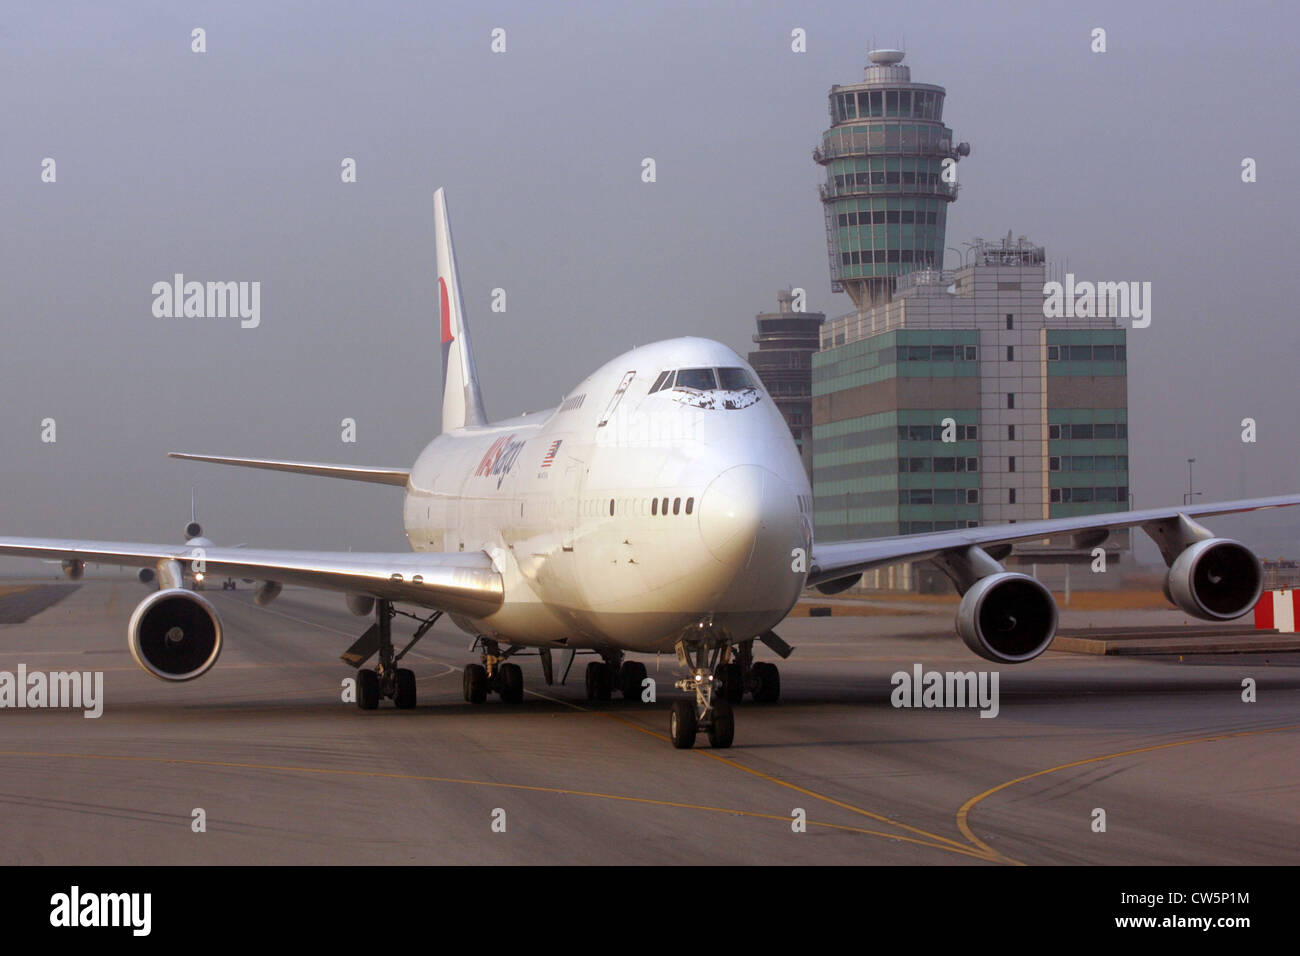 Hong Kong, aircraft on the runway of the airport at Chek Lap Kok Stock Photo